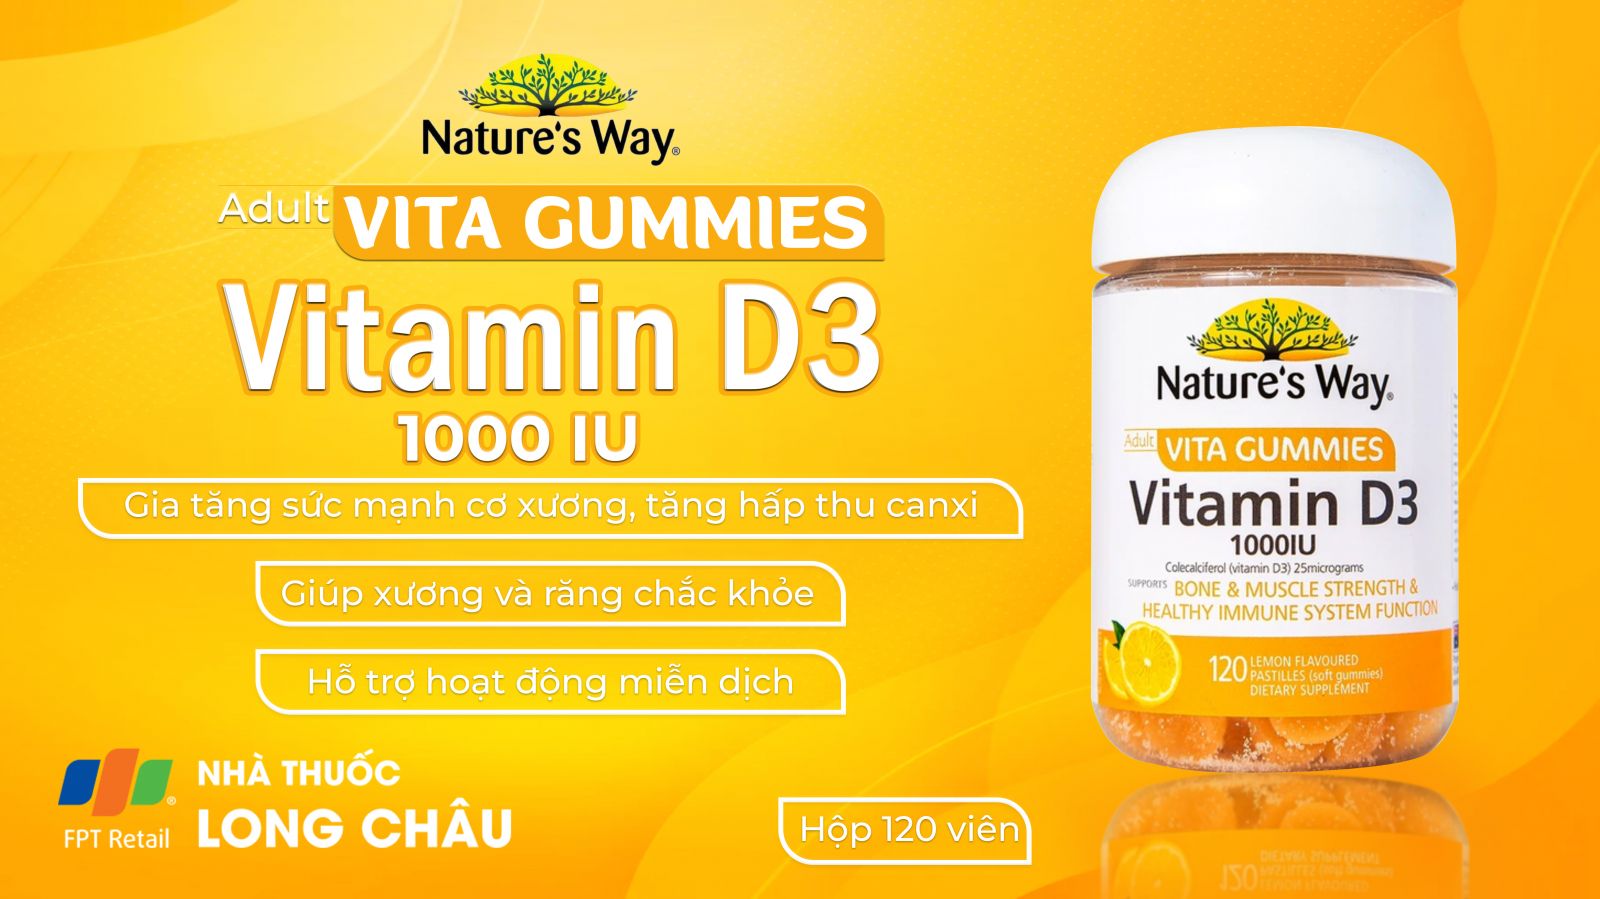 Adult Vita Gummies Vitamin D3 2